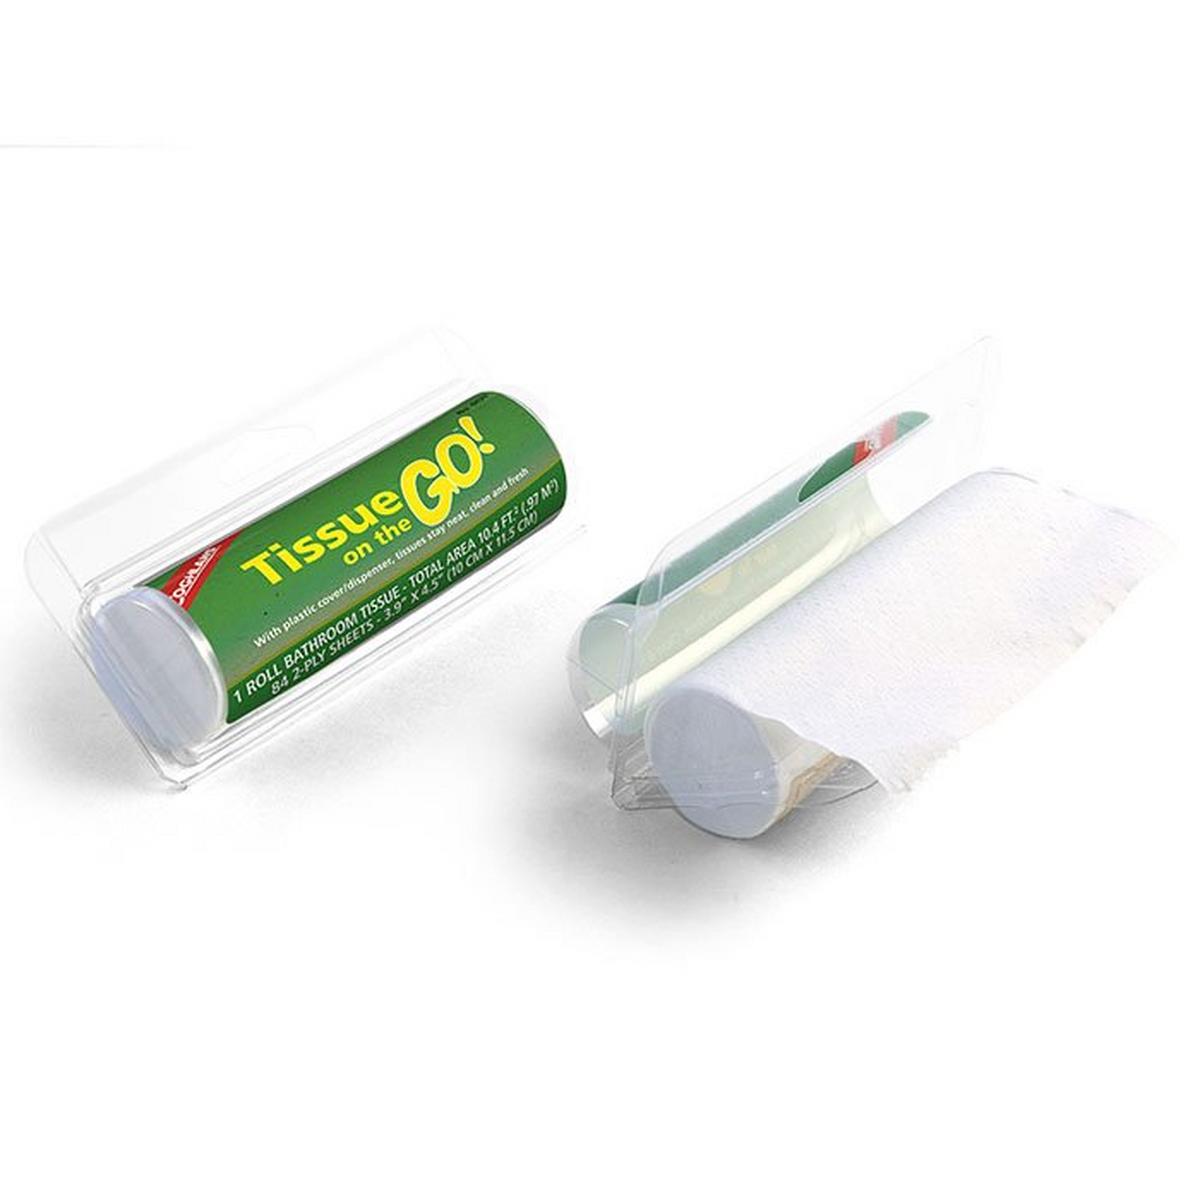 Papier hygiénique Tissue On The Go (paquet de 2)